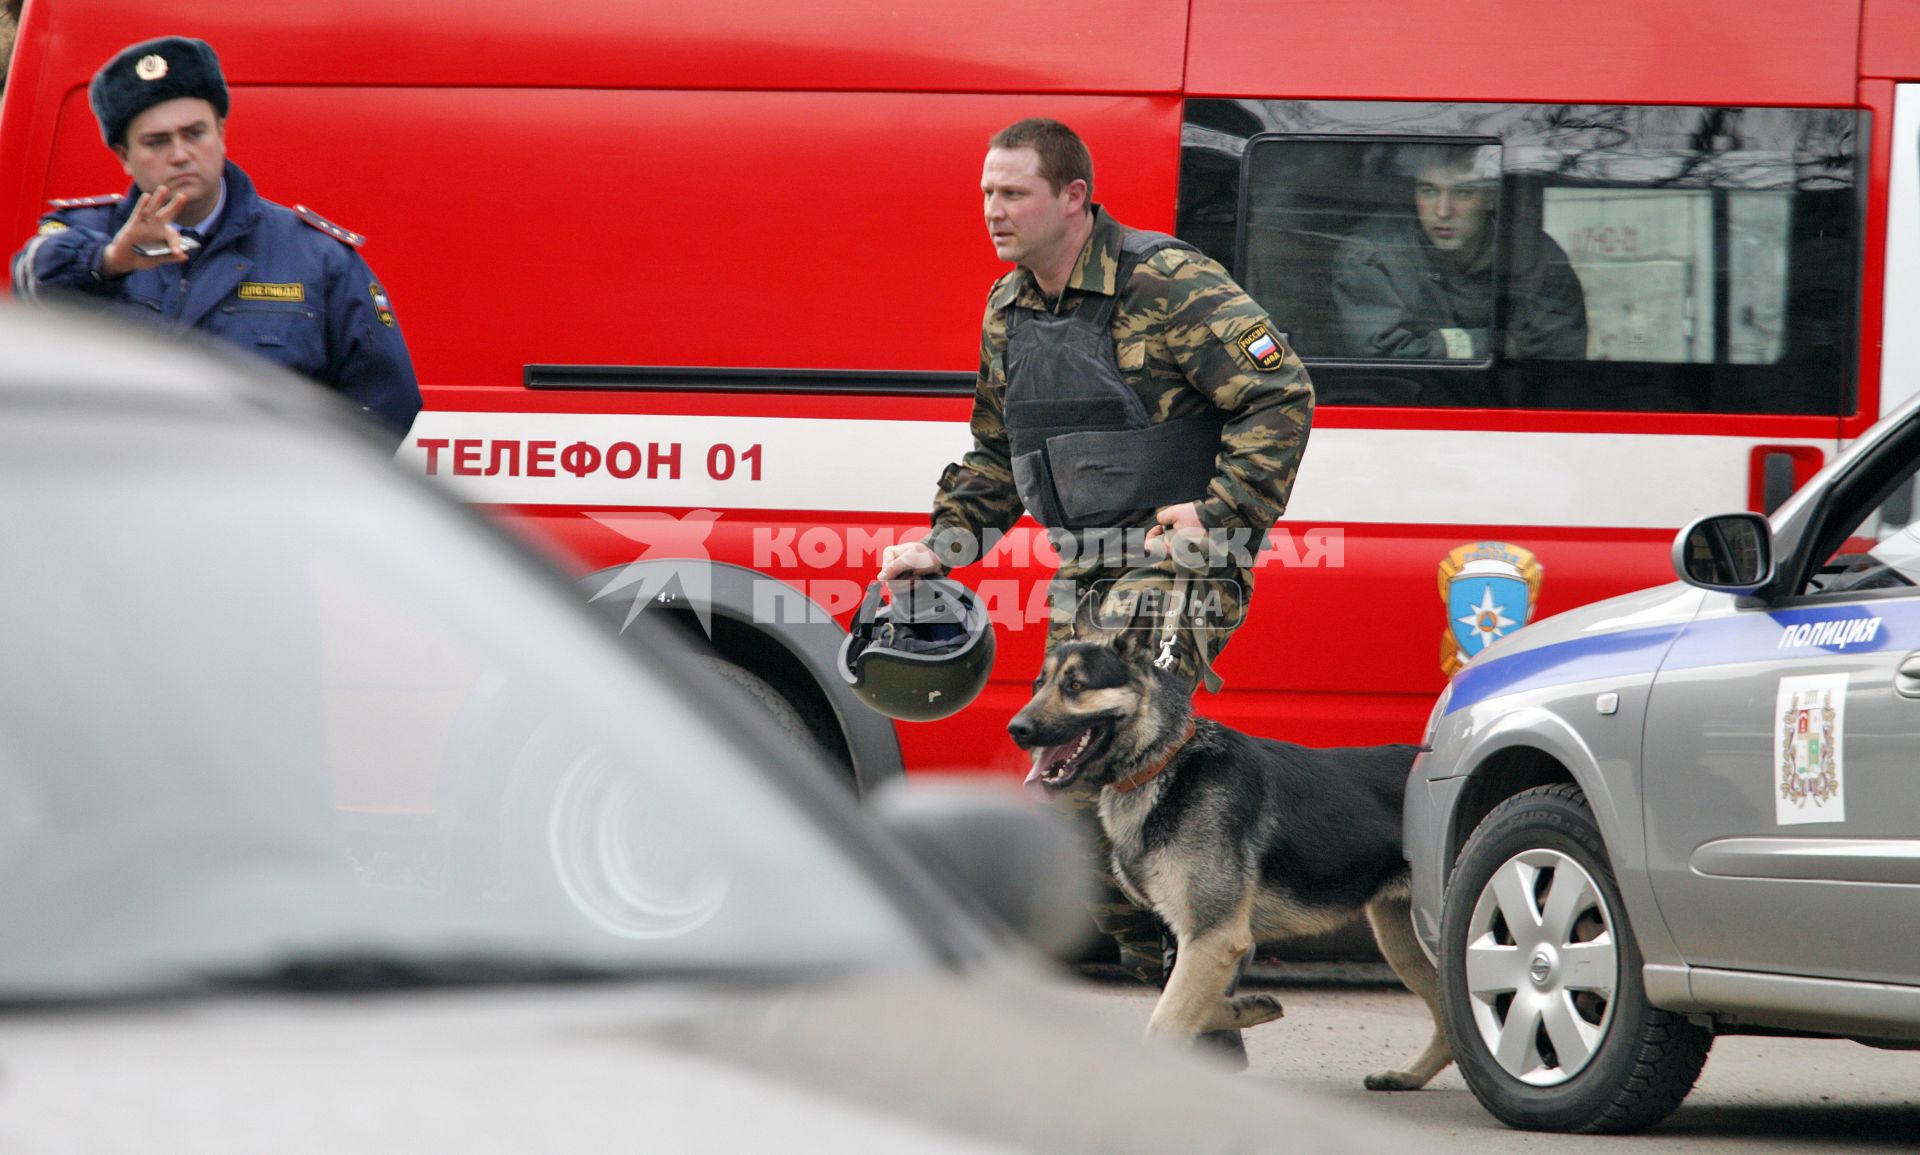 Угроза взрыва в ставропольском банке. На снимке: работа подразделений специального назначения на месте угрозы.